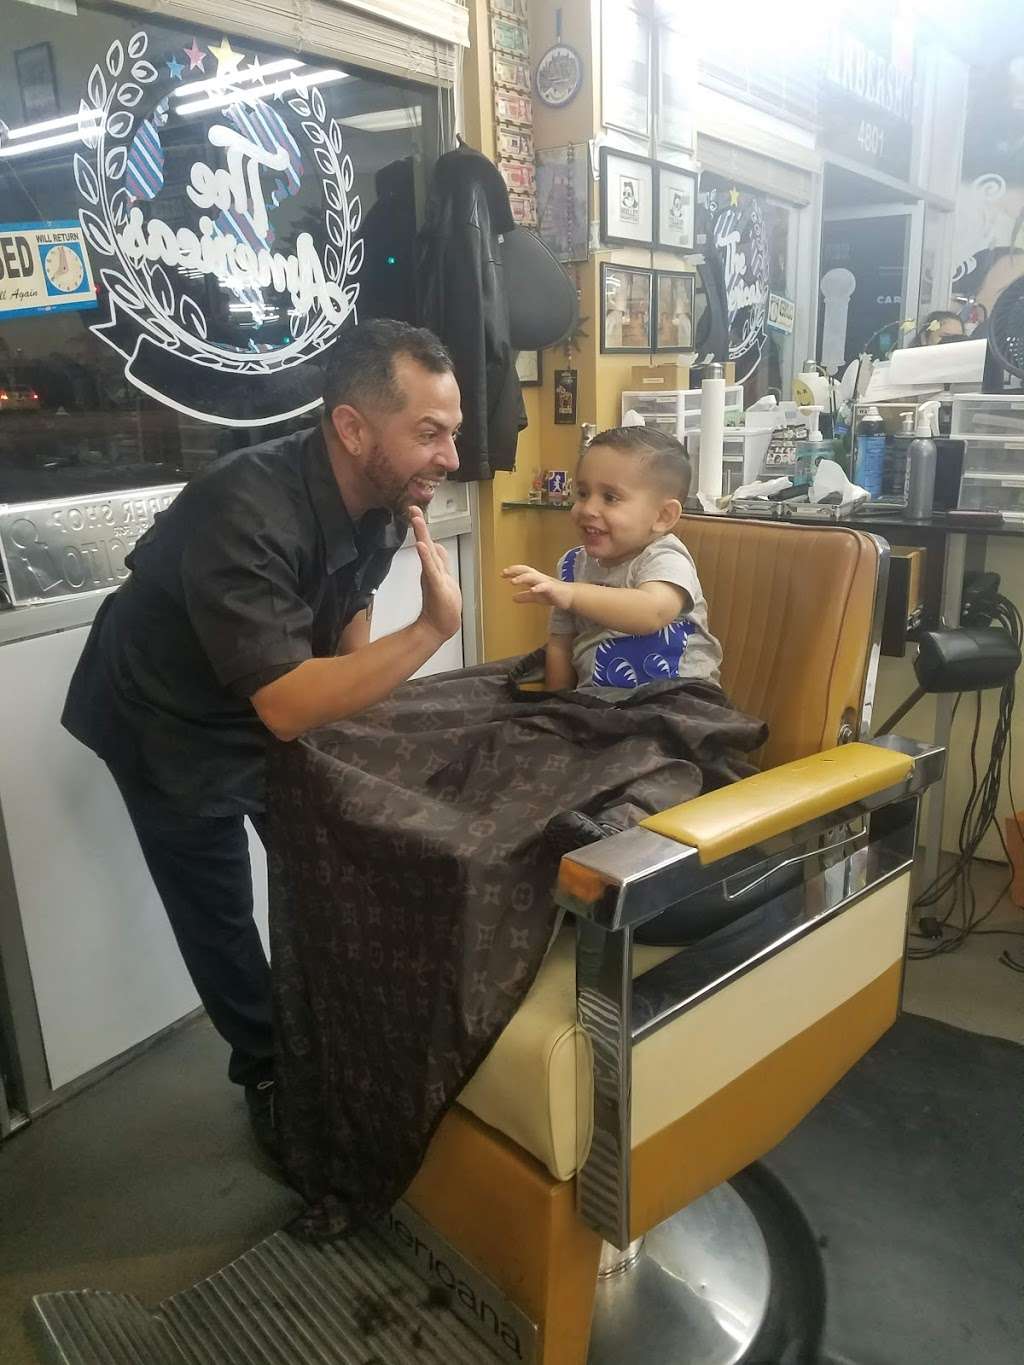 The Americas Barbershop | 4801 W Imperial Hwy, Inglewood, CA 90304 | Phone: (424) 702-6896